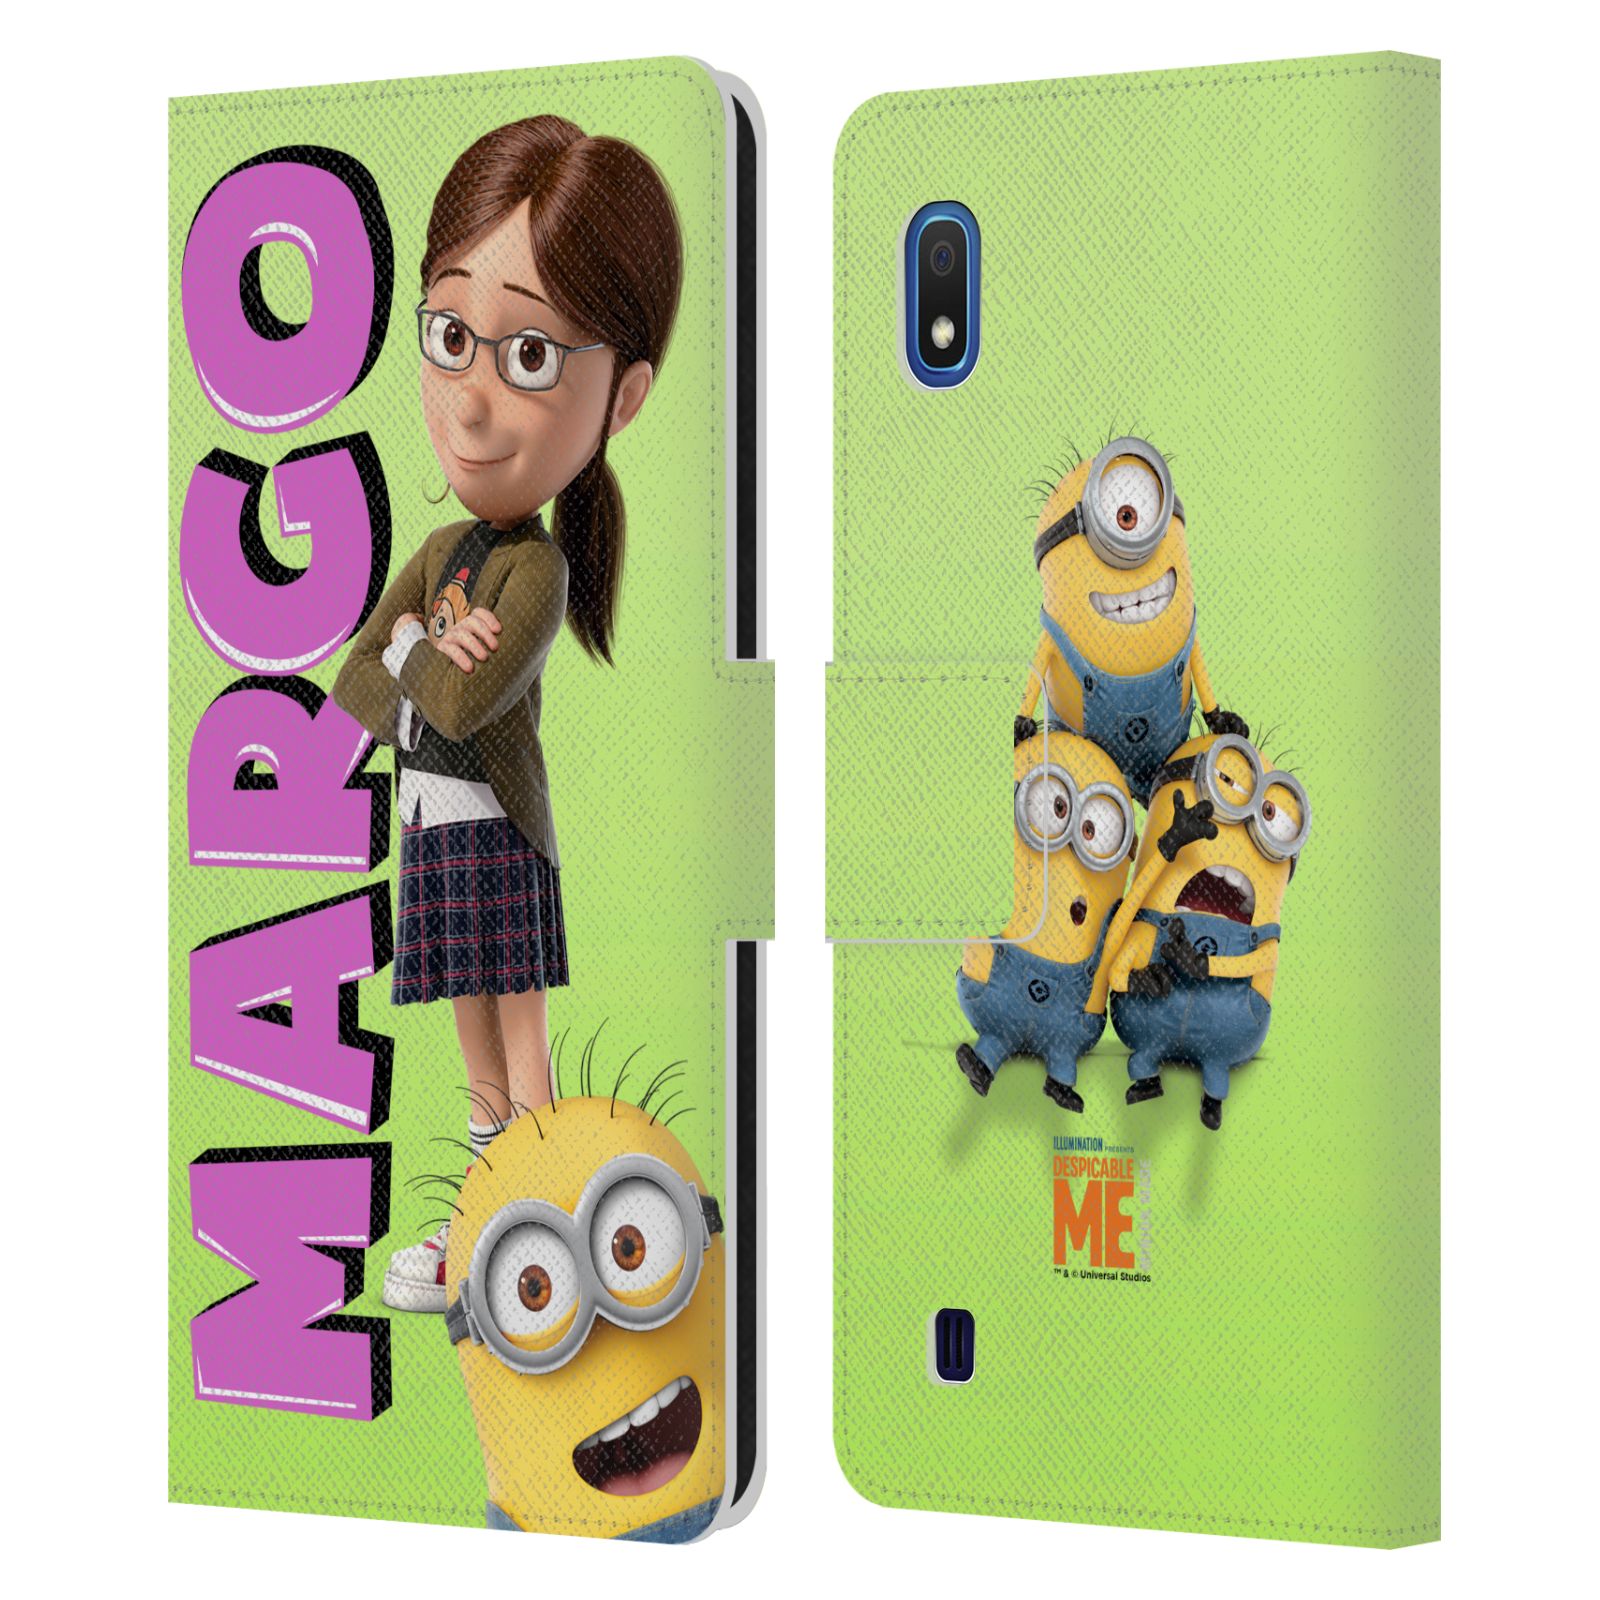 Pouzdro na mobil Samsung Galaxy A10 - Head Case - Margo a mimoni zelená